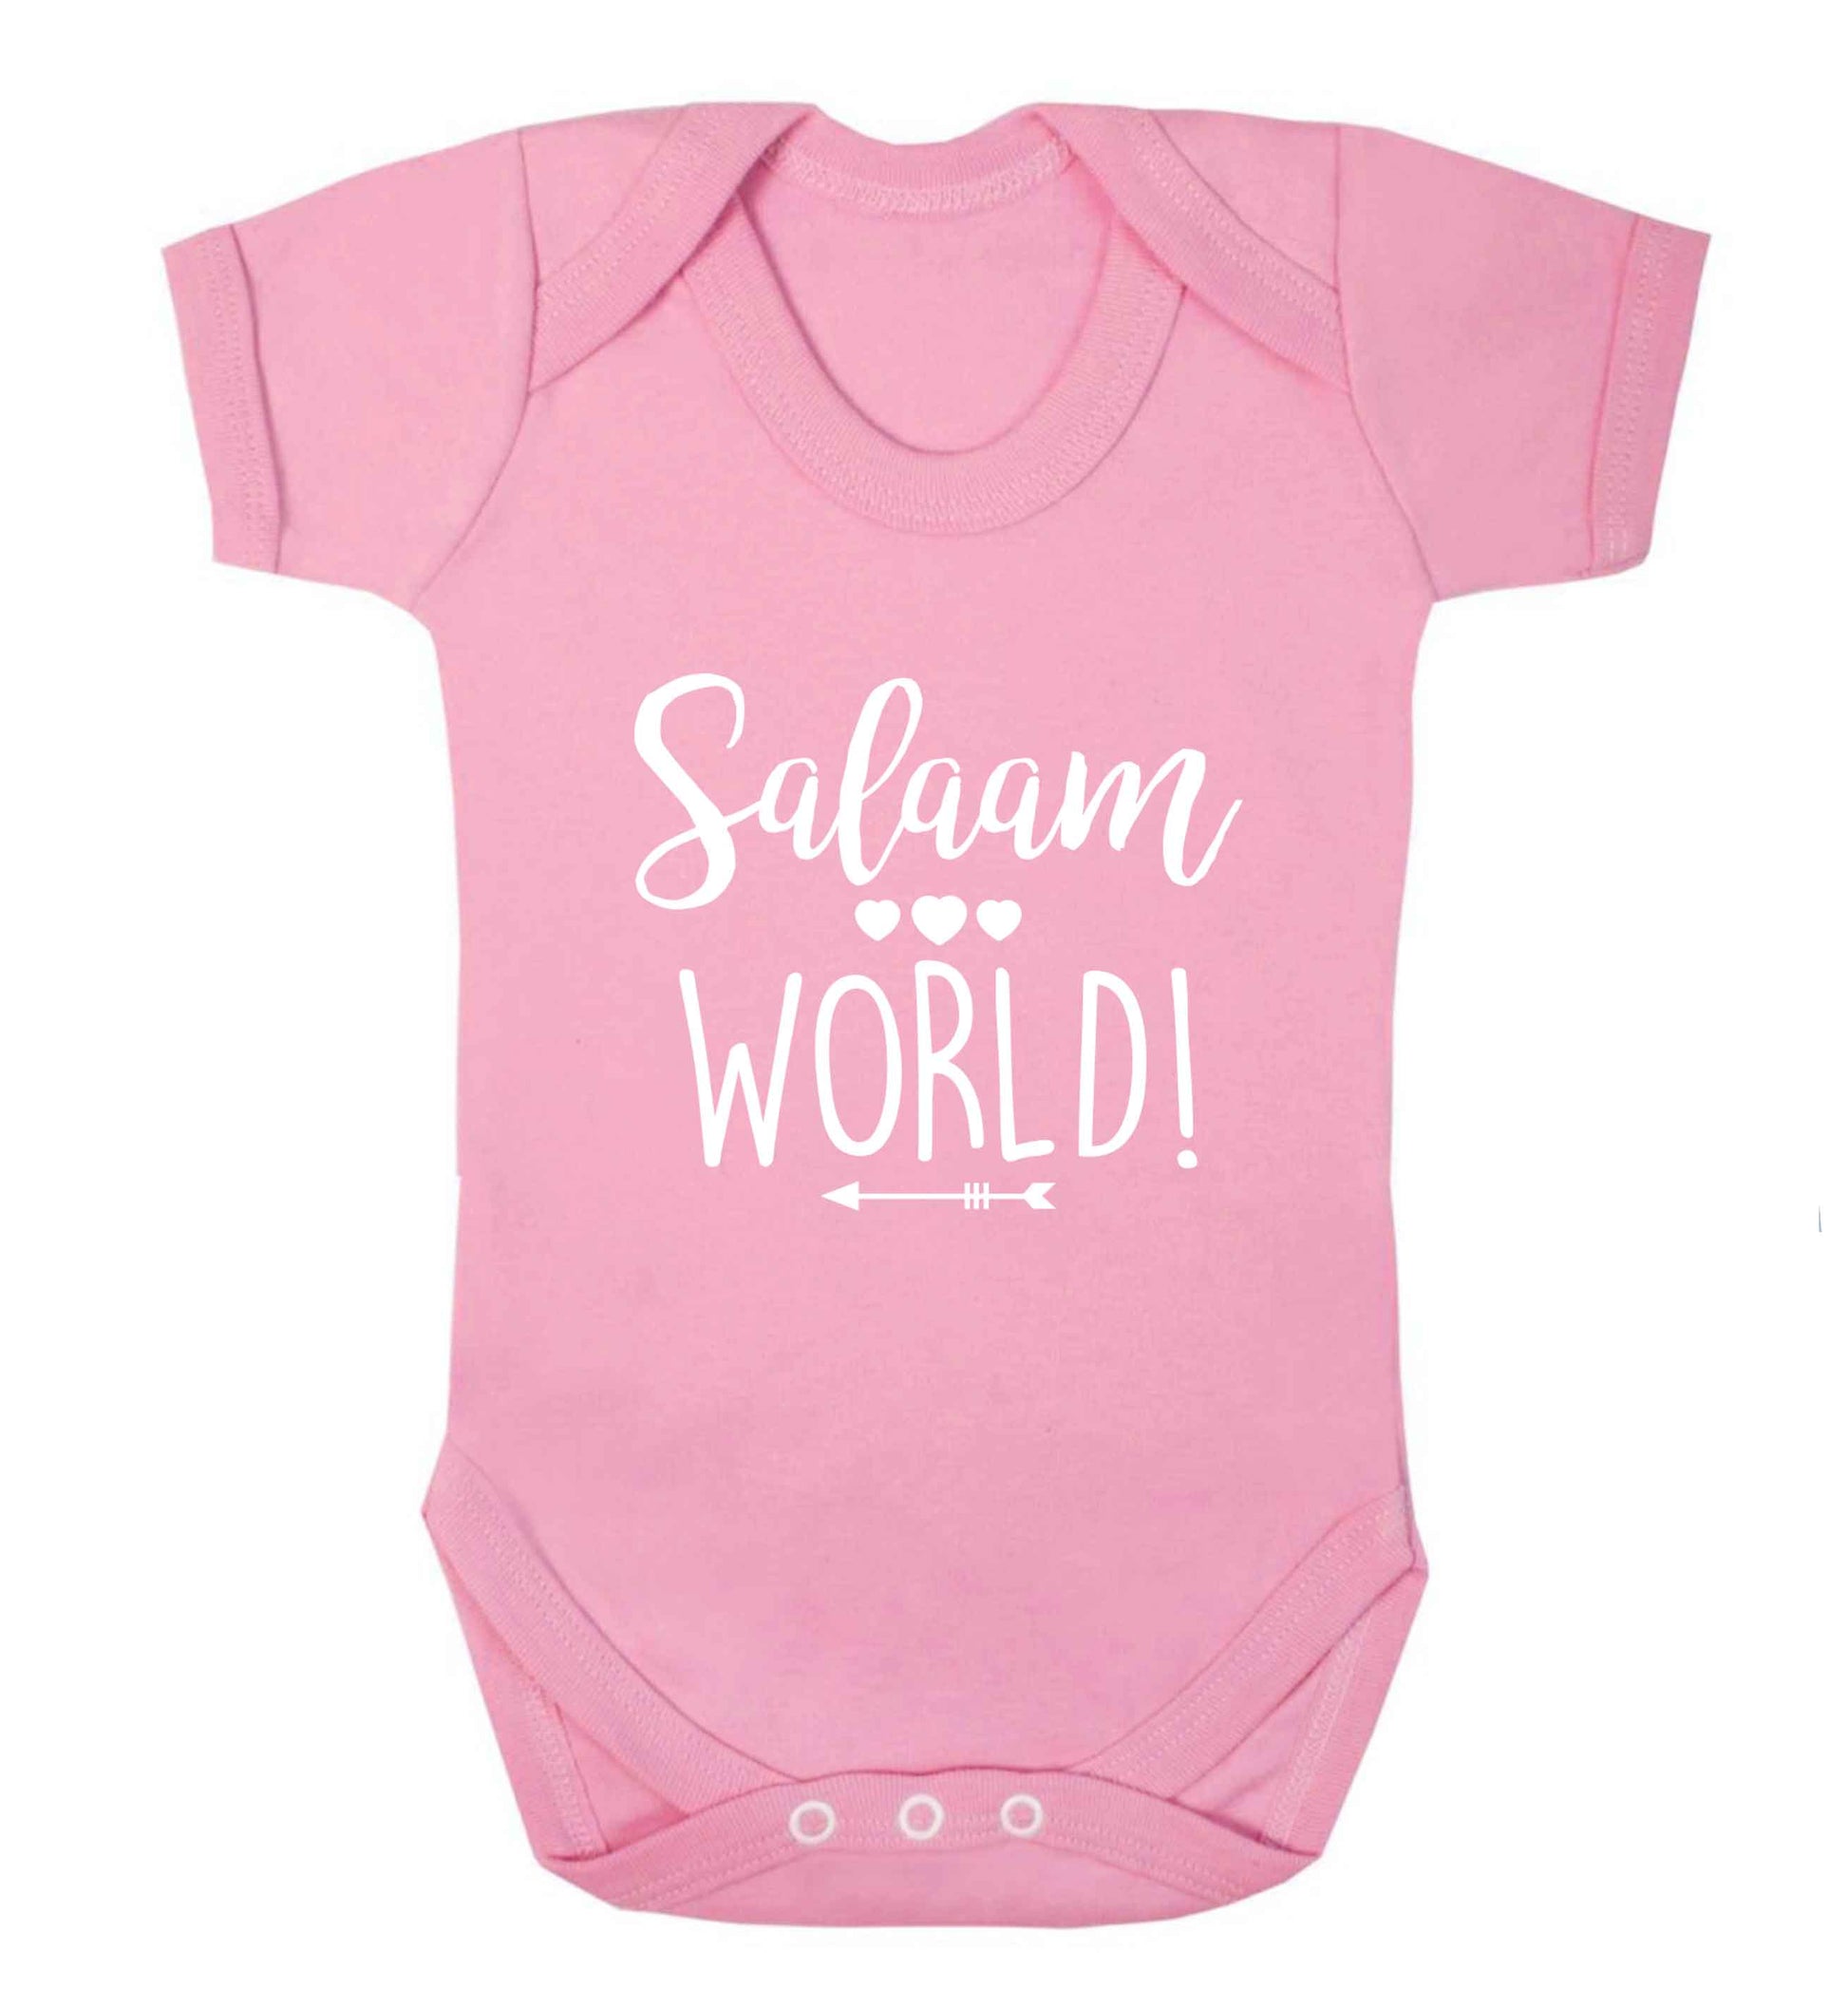 Salaam world baby vest pale pink 18-24 months